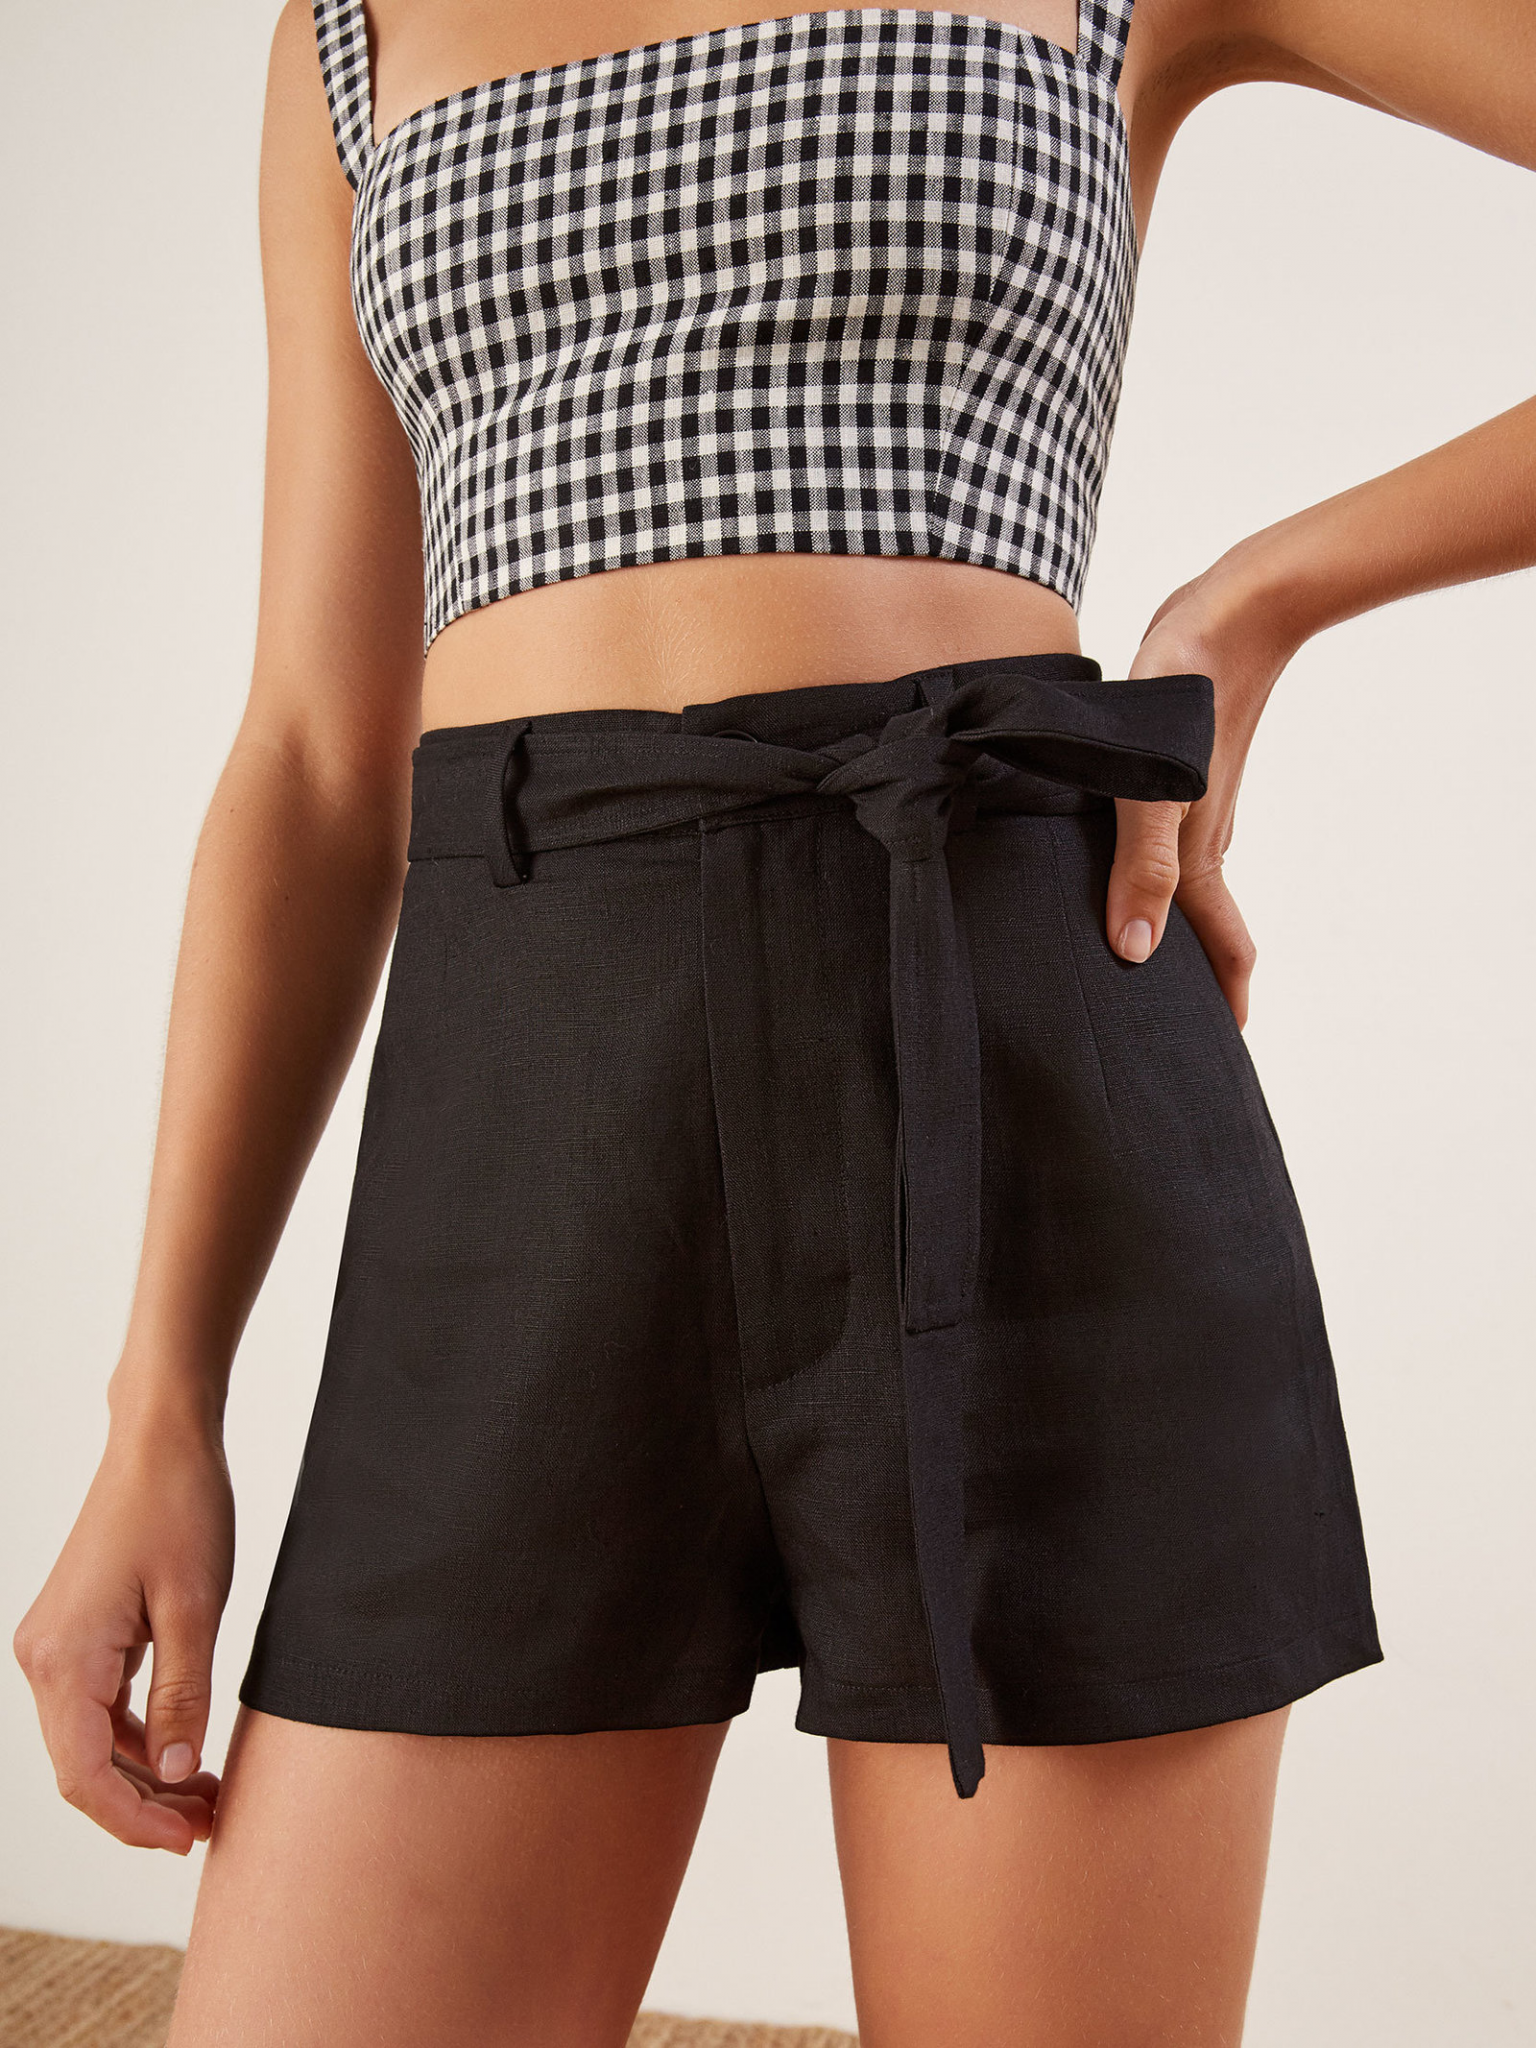 15 high-waisted shorts that aren’t denim